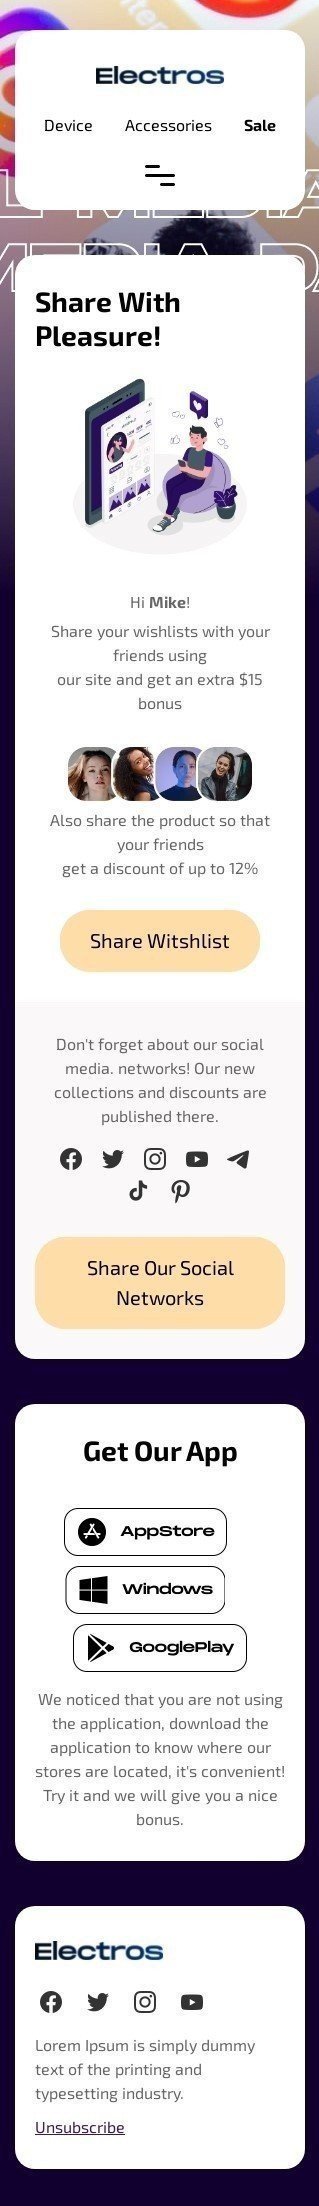 Modelo de E-mail de «Compartilhe suas listas de desejos para um bônus» de Dia das Mídias Sociais para a indústria de Comércio eletrônico Visualização de dispositivo móvel